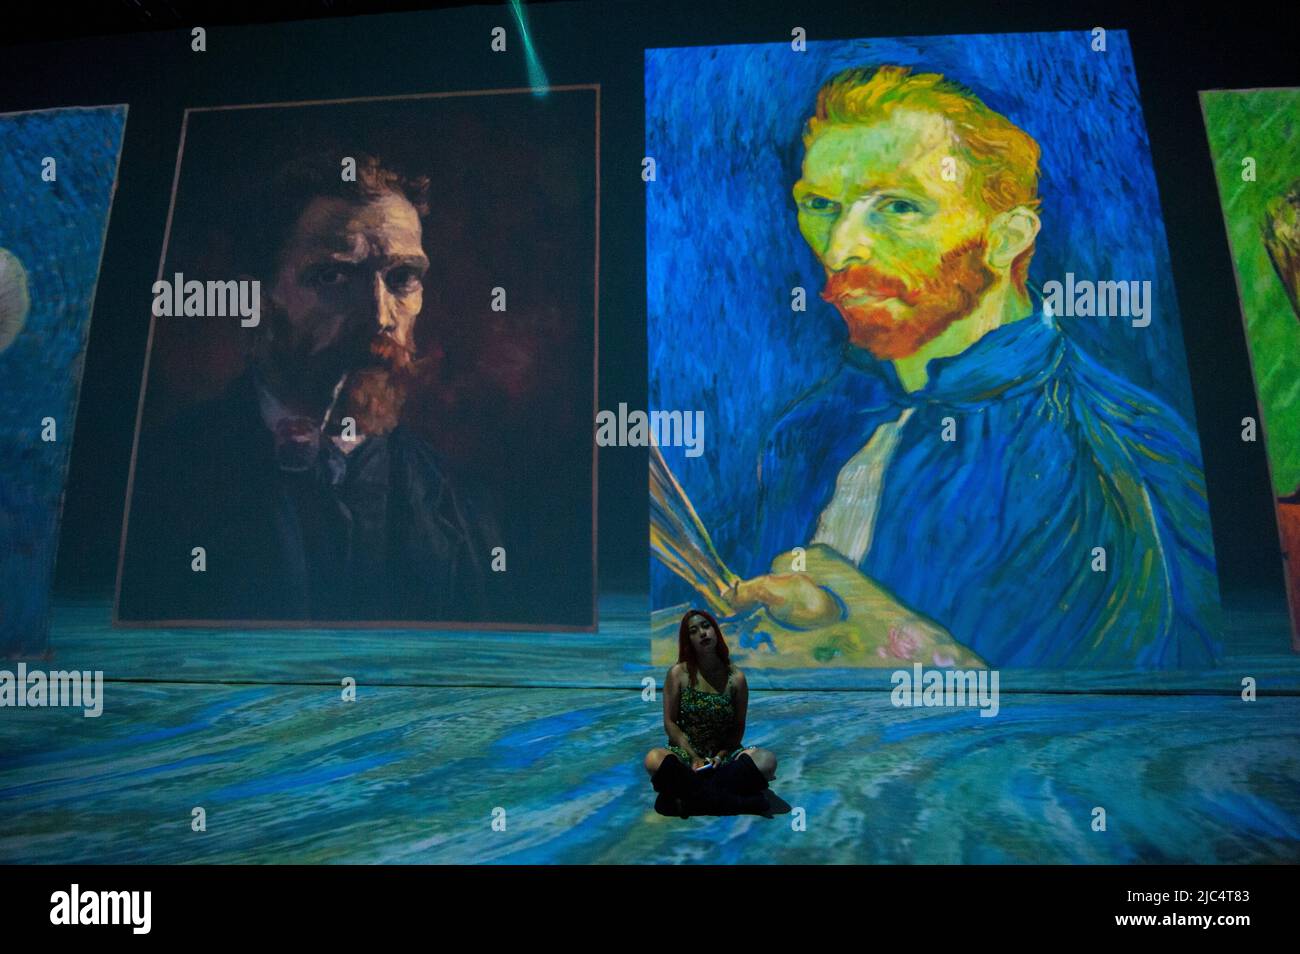 Le persone prendono parte alla coinvolgente mostra dell'esperienza "Beyond Van Gogh" di Vincent Van Gogh, che raccoglie le sue opere d'arte più importanti, a Bogo Foto Stock